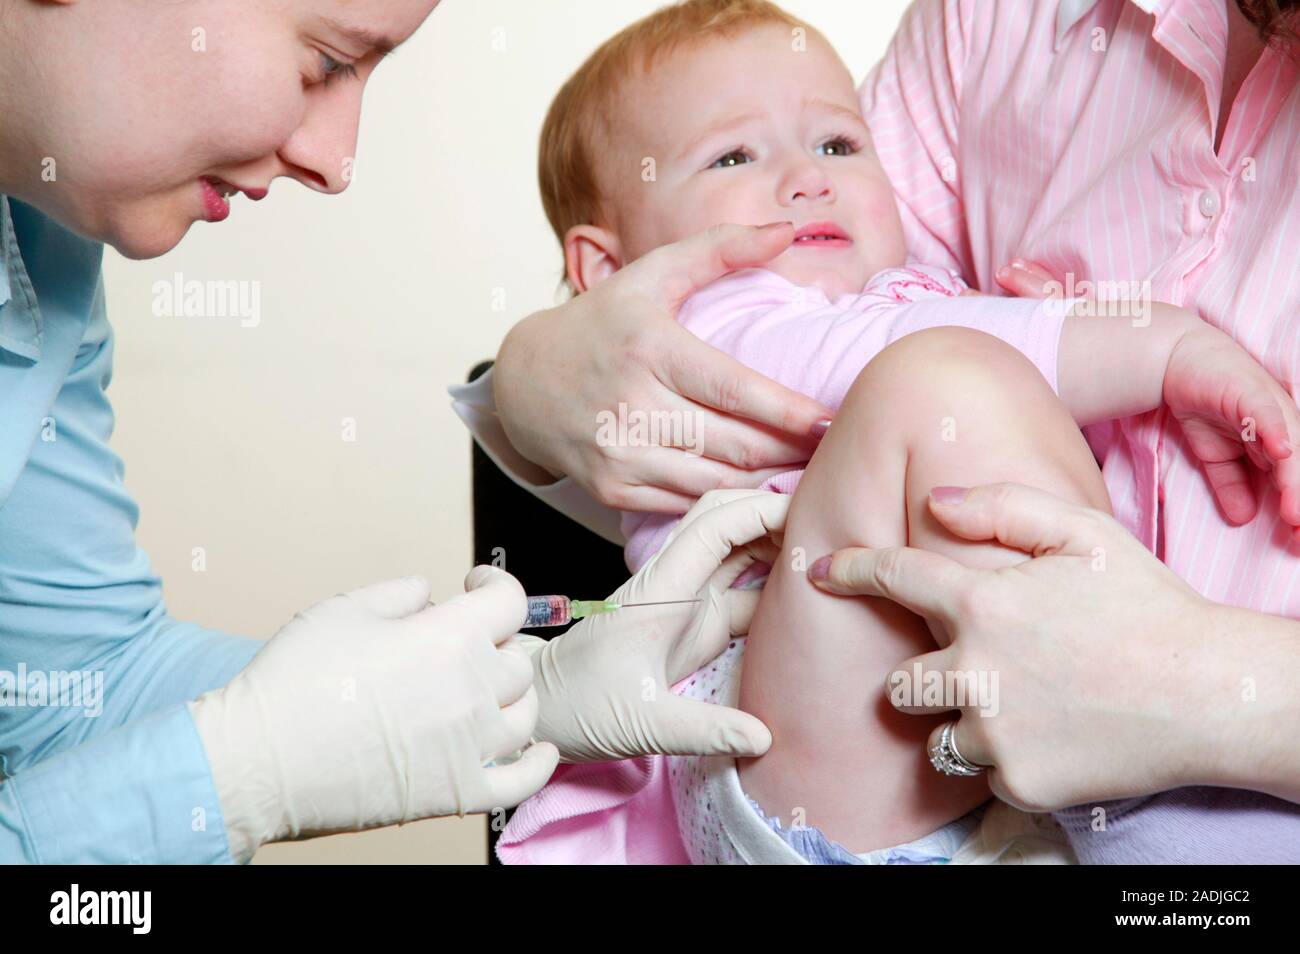 Краснуха нужна ли прививка. Вакцинация краснухи у детей. Прививка детям. Профилактика краснухи у детей прививки. Вакцинация взрослых.